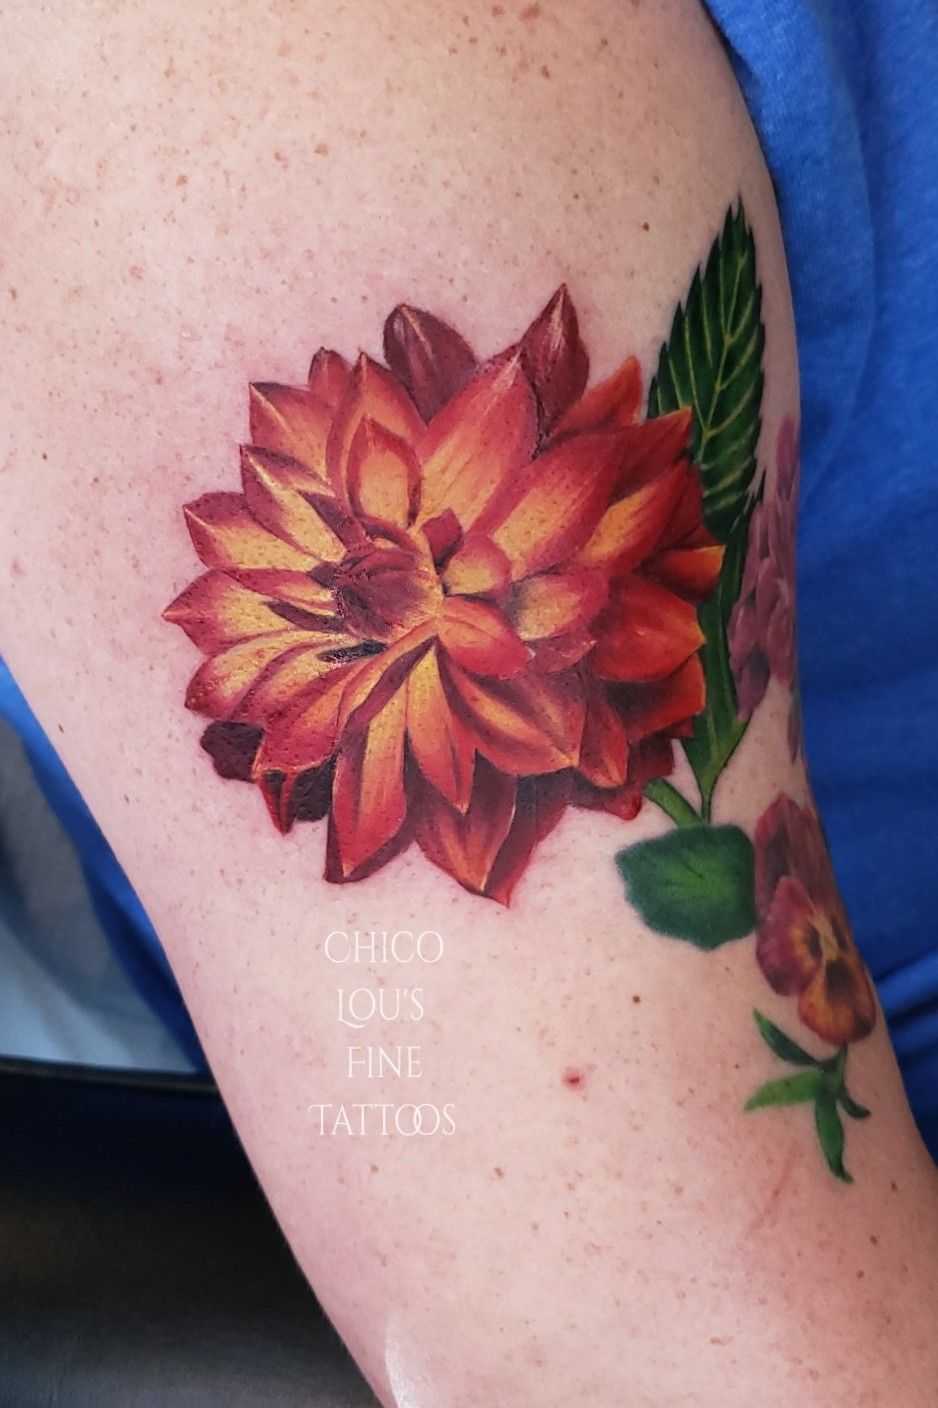 Realistic red dahlia tattoo  Tattoomagzcom  Tattoo Designs  InkWorks  Gallery  Tattoo Designs  In  Red flower tattoos Dahlia tattoo Dahlia  flower tattoos